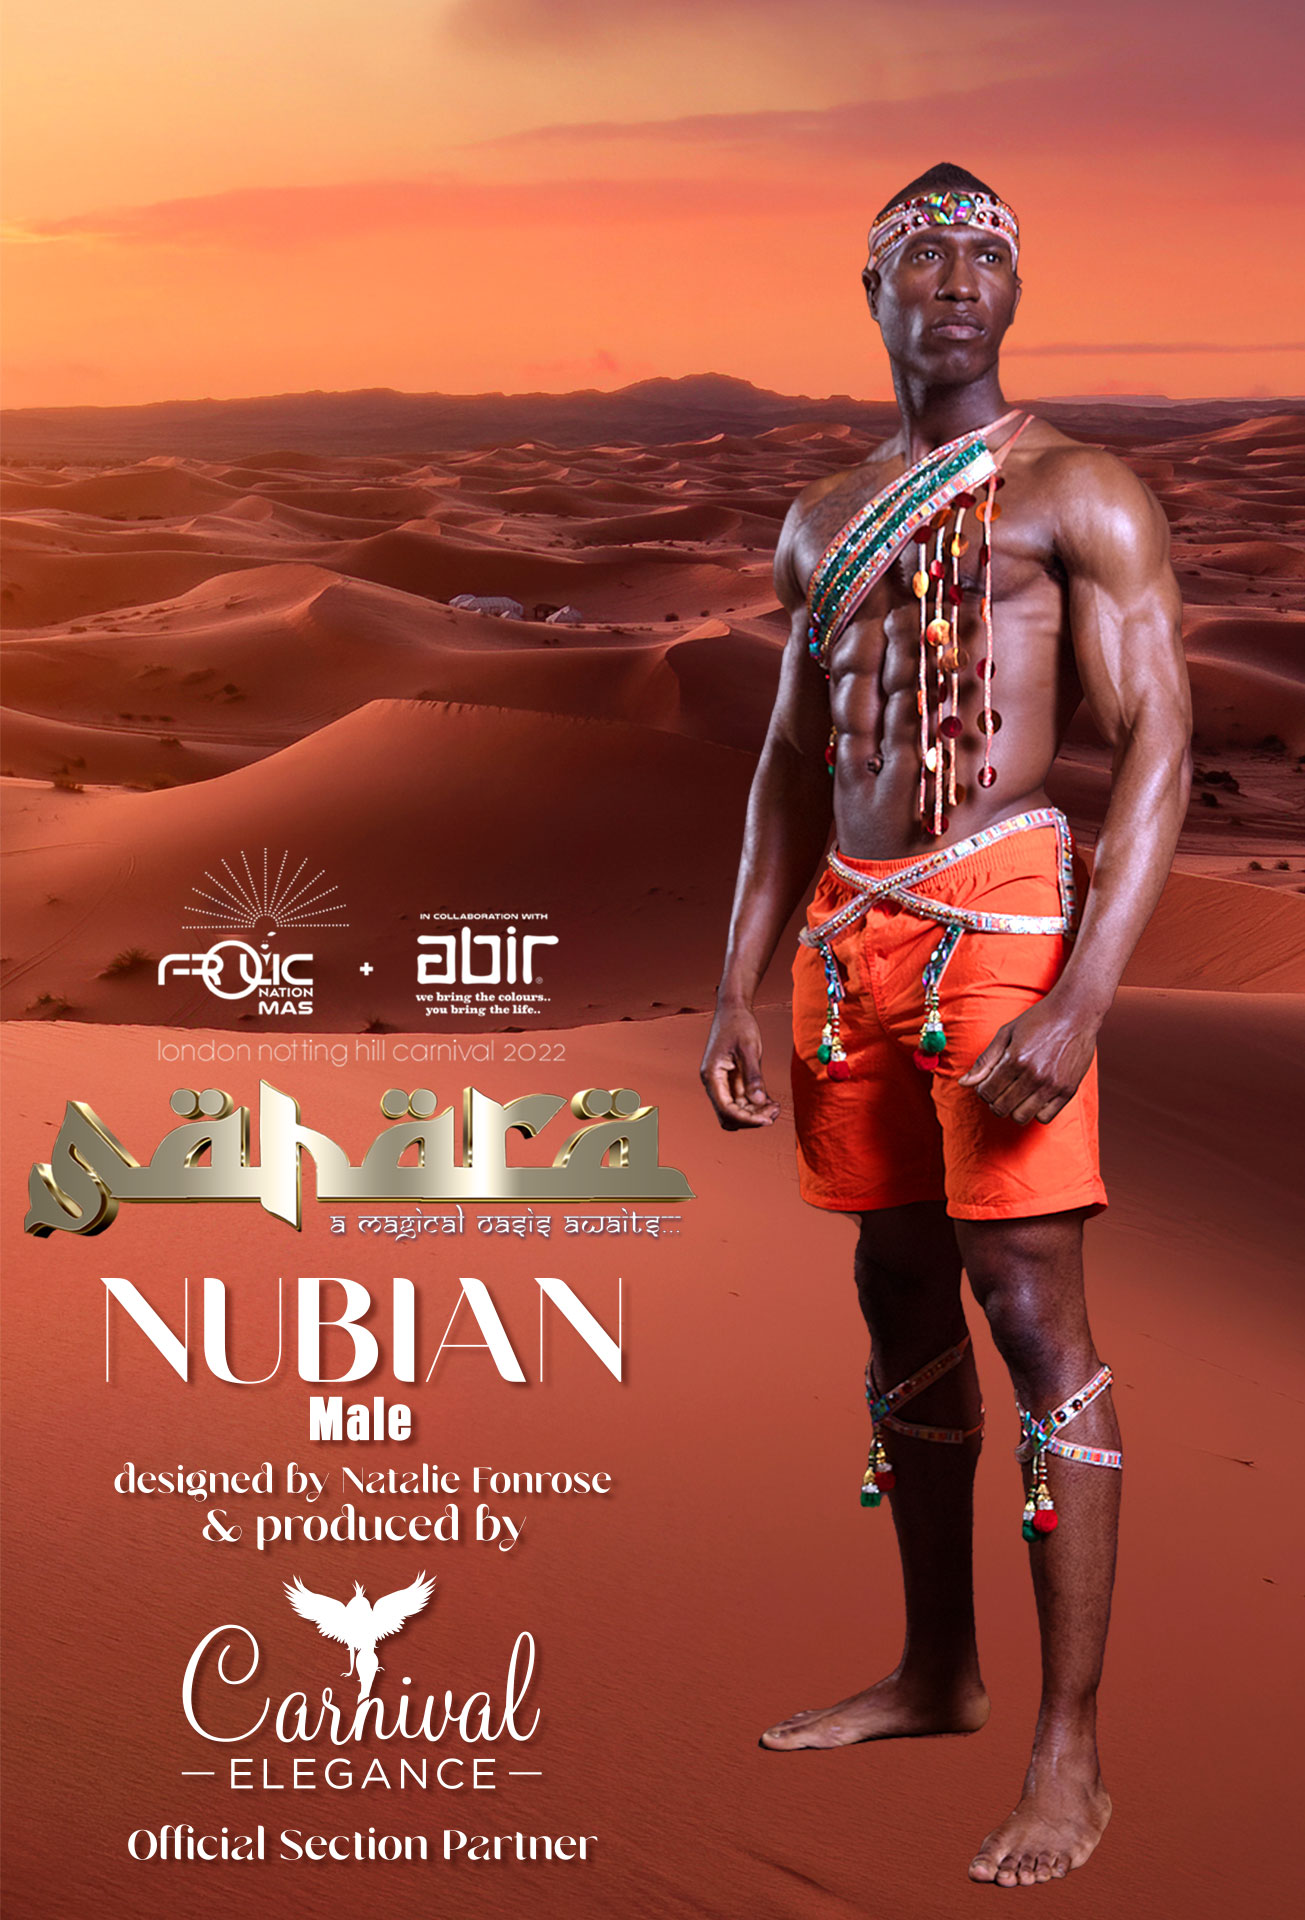 registration_section_image_holder_Nubian_male